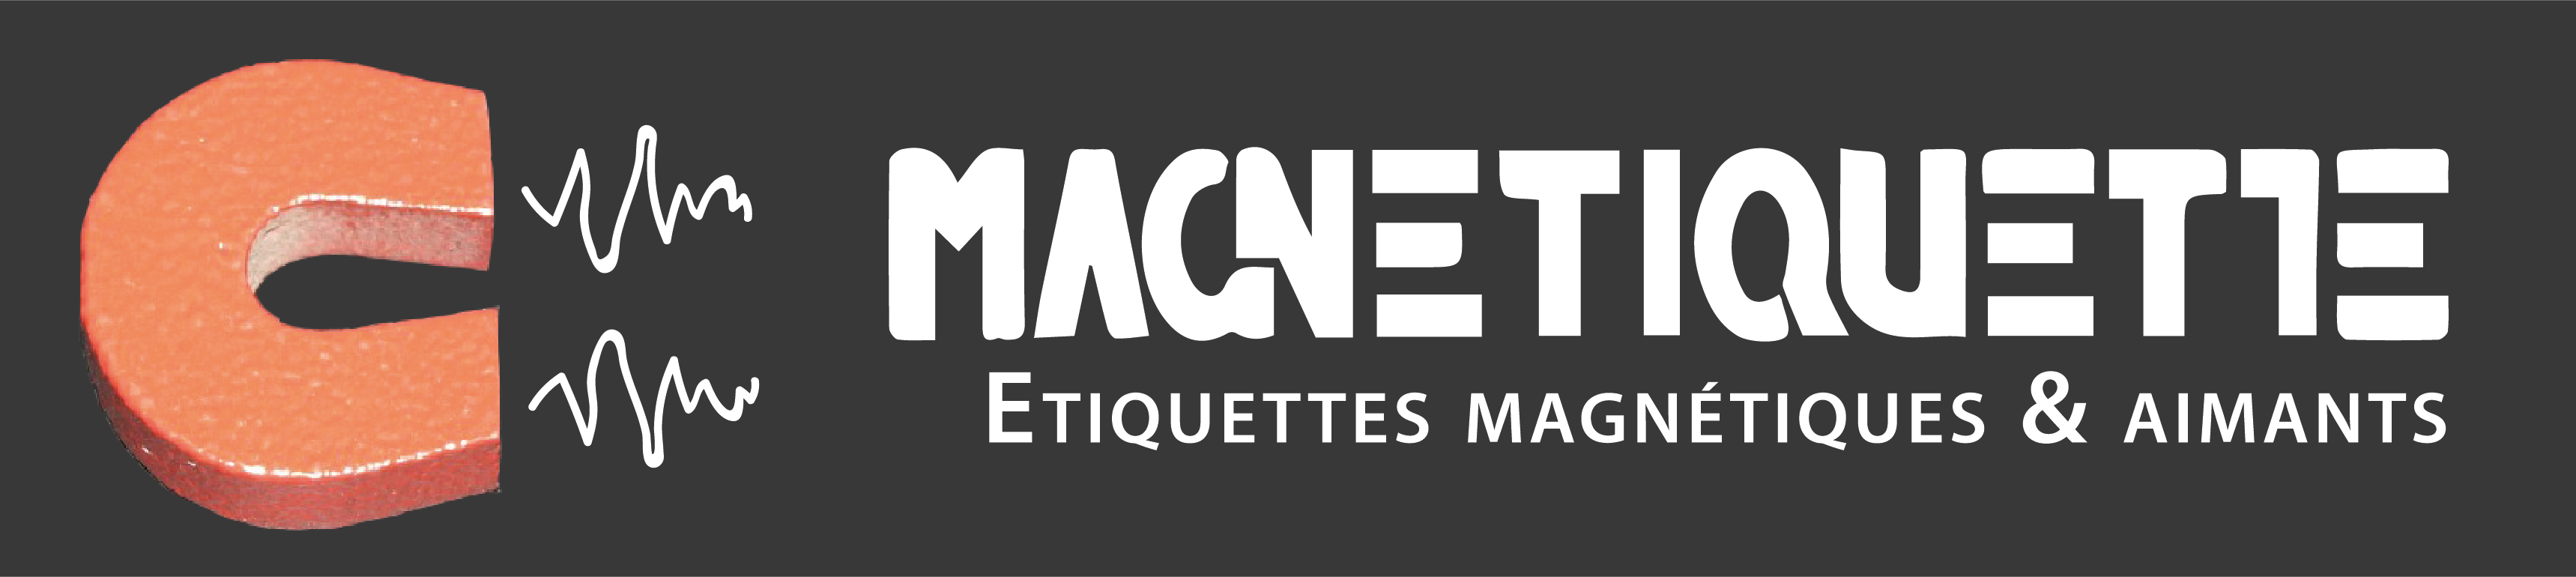 Plaque magnétique aimantée adhésive (feuille magnétique) Magnétiquette - Logo